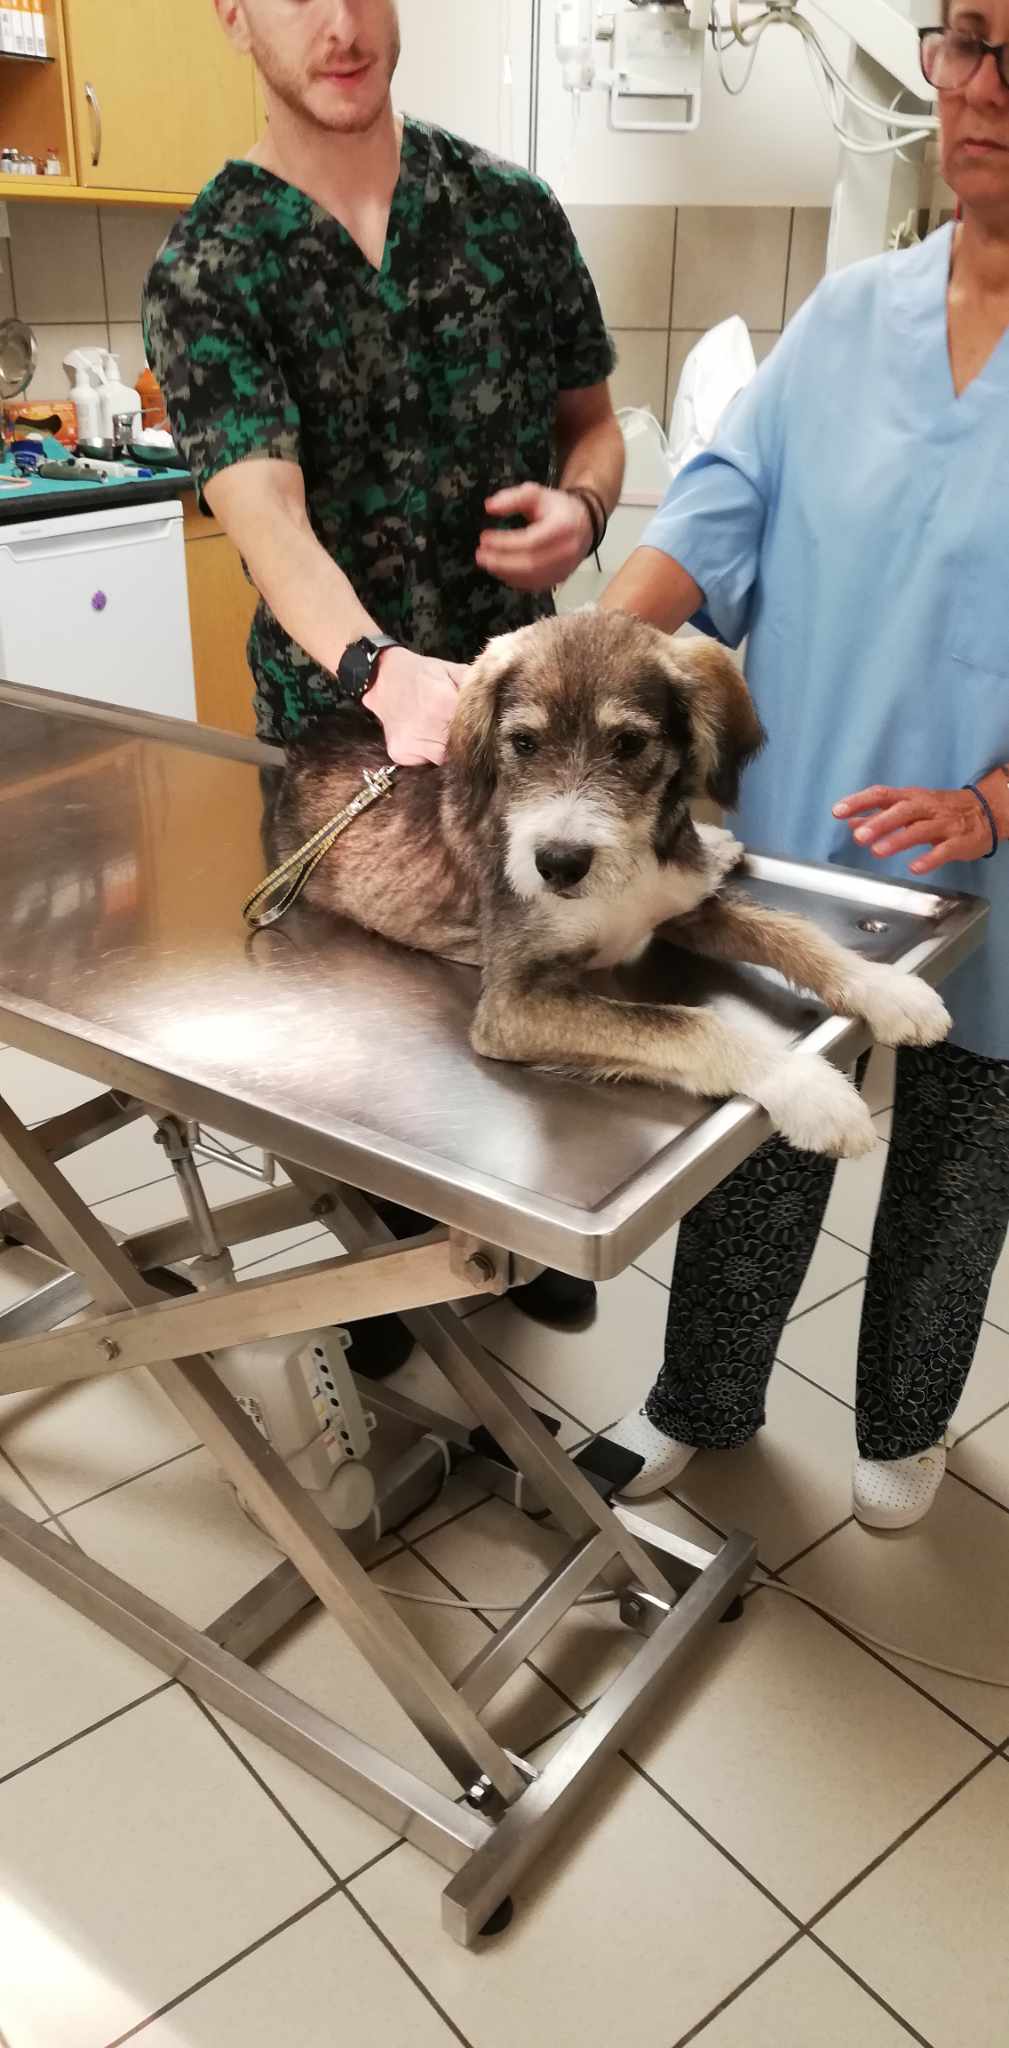 ΠΕ.ΦΙ.ΠΟ. Σύλλογος Αμαρουσίου : Βρέθηκε σκυλάκι Griffon στην περιοχή Νέα Λέσβο στο Μαρούσι..ΤΟ ΨΑΧΝΕΙ ΚΑΠΟΙΟΣ;